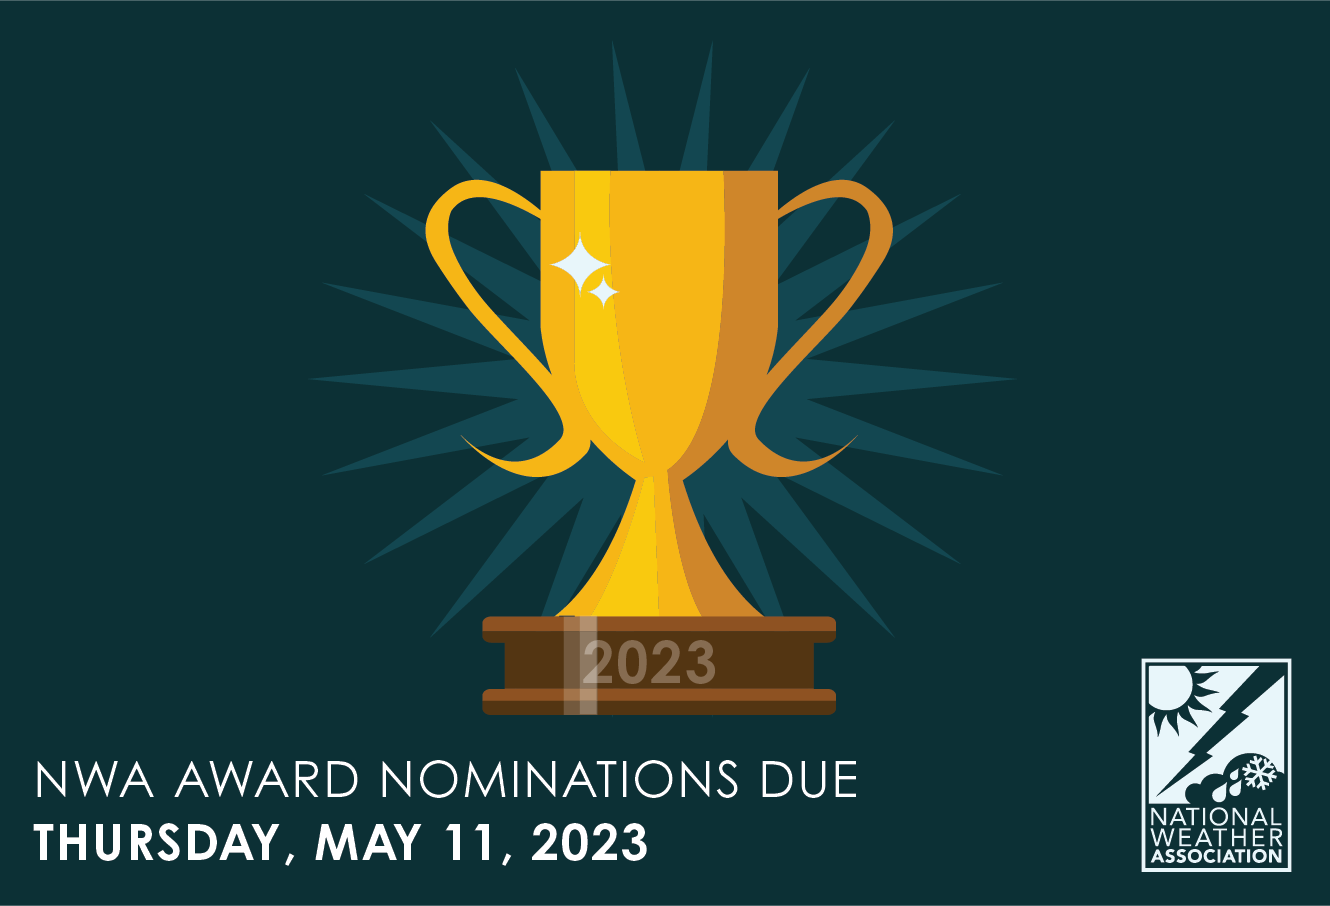 NWA AWARD NOMINATIONS DUE THURSDAY, MAY 11, 2023